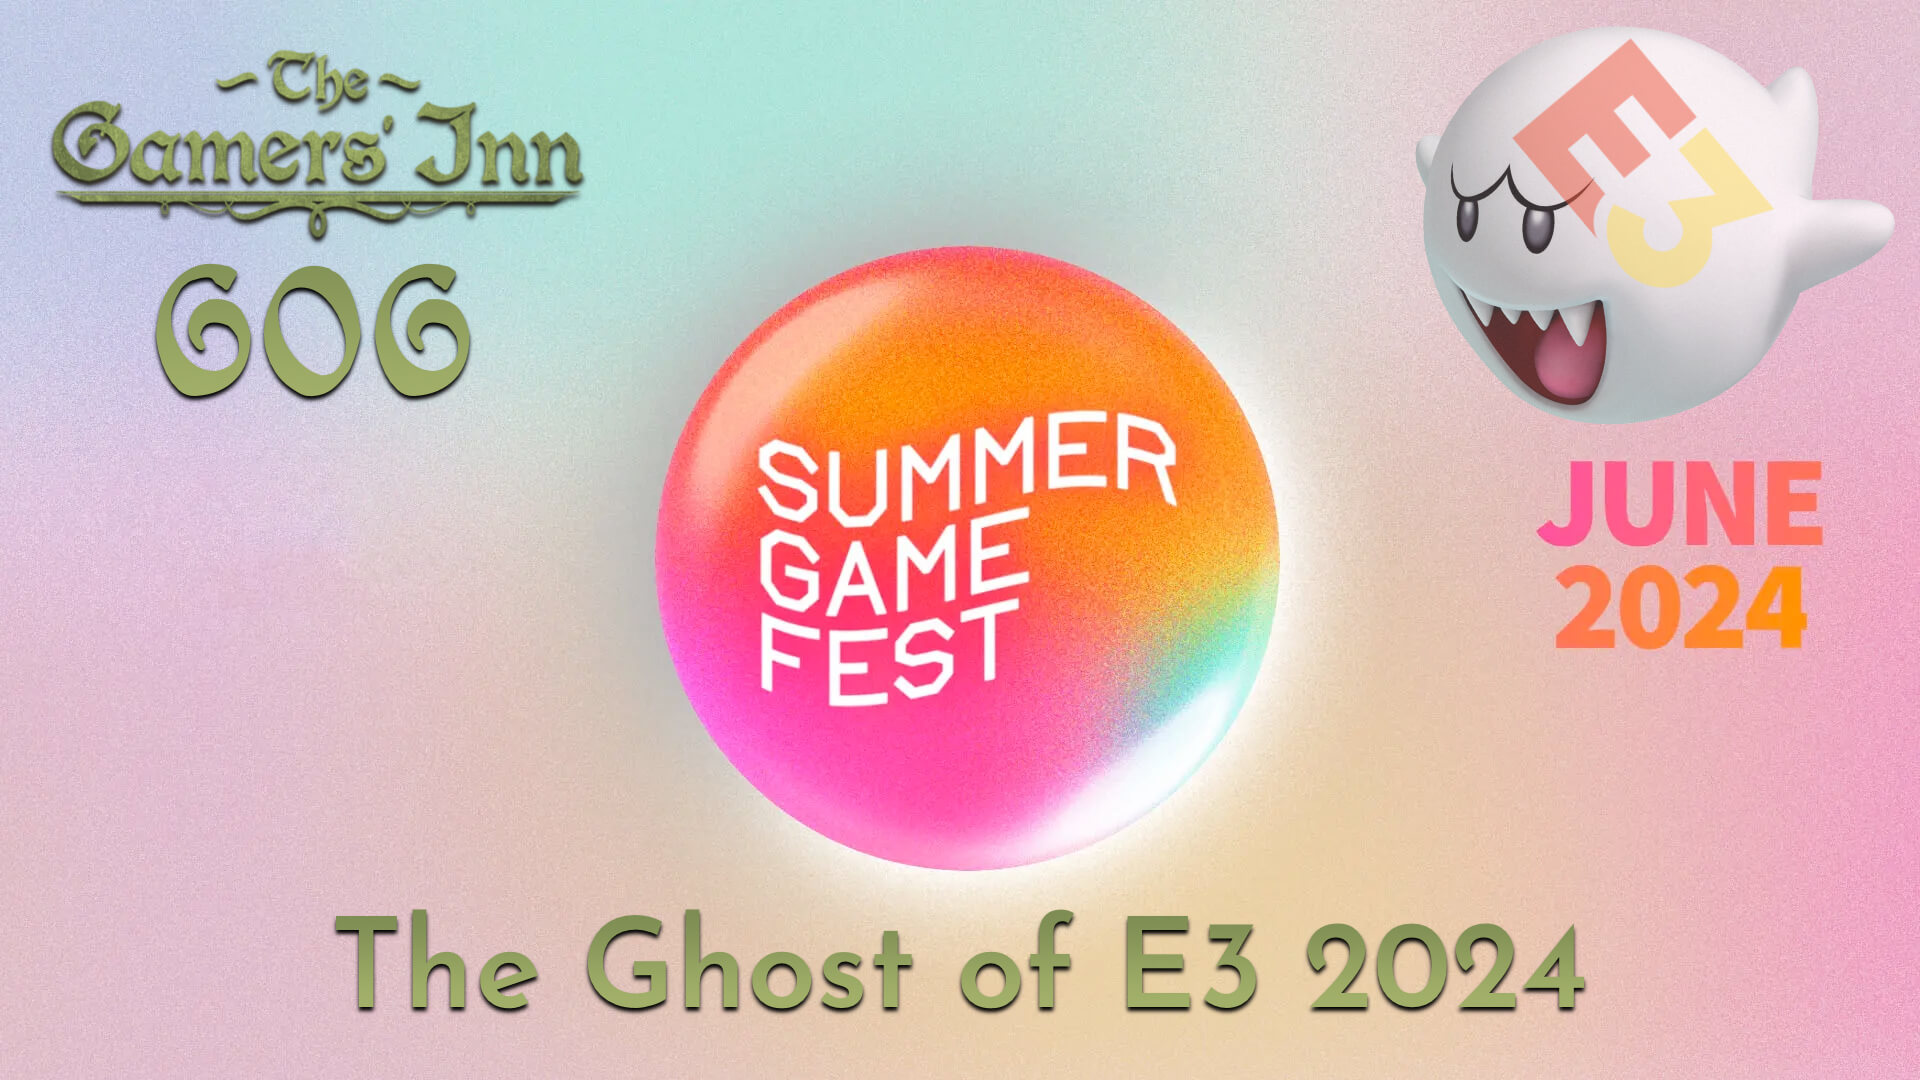 TGI 606 - The Ghost of E3 2024